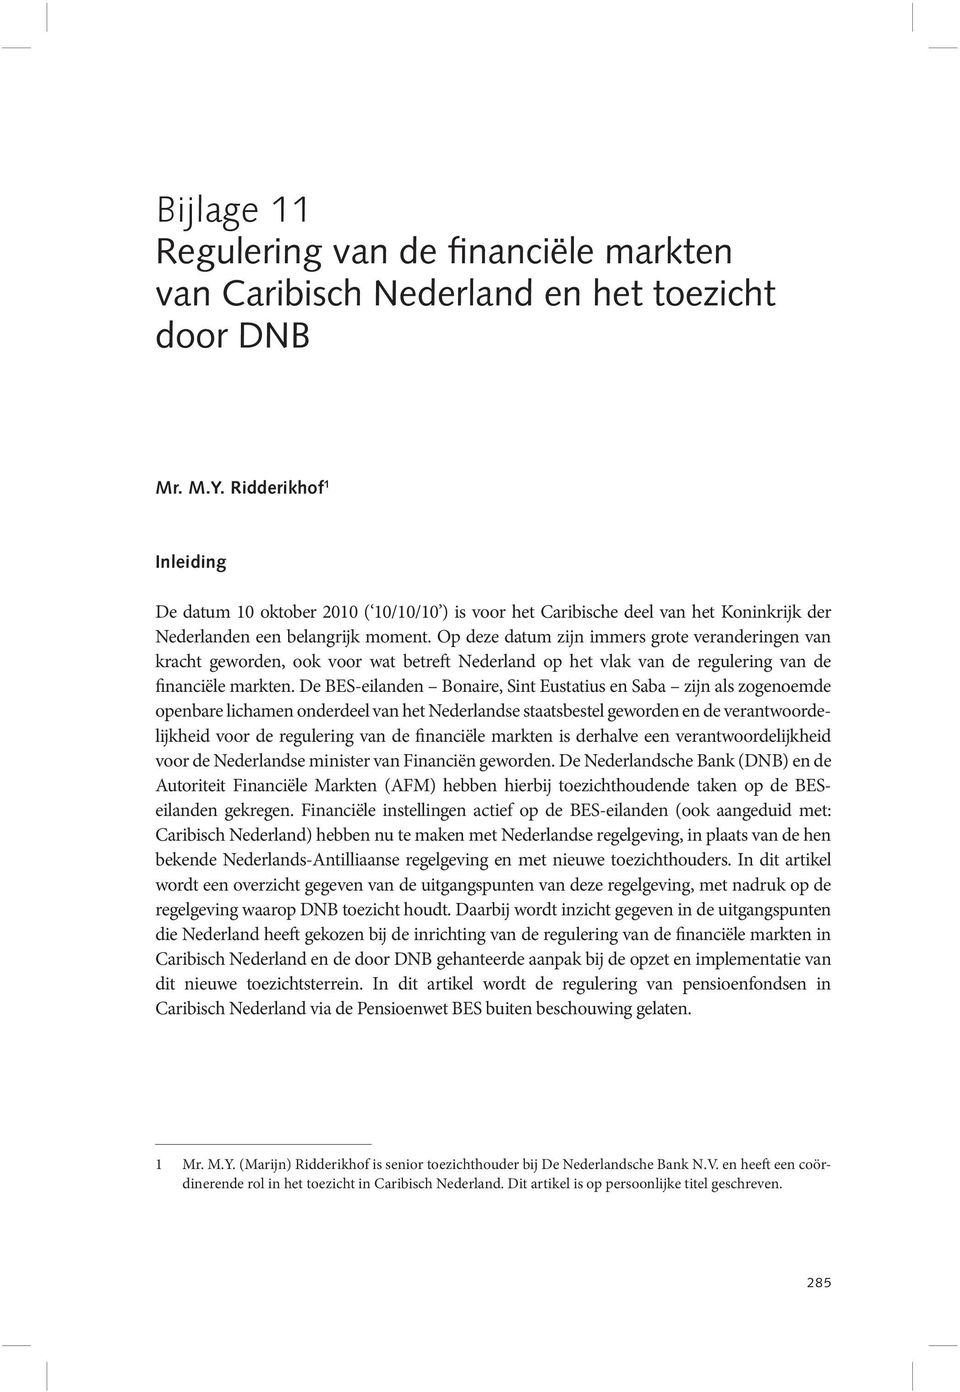 Op deze datum zijn immers grote veranderingen van kracht geworden, ook voor wat betreft Nederland op het vlak van de regulering van de financiële markten.